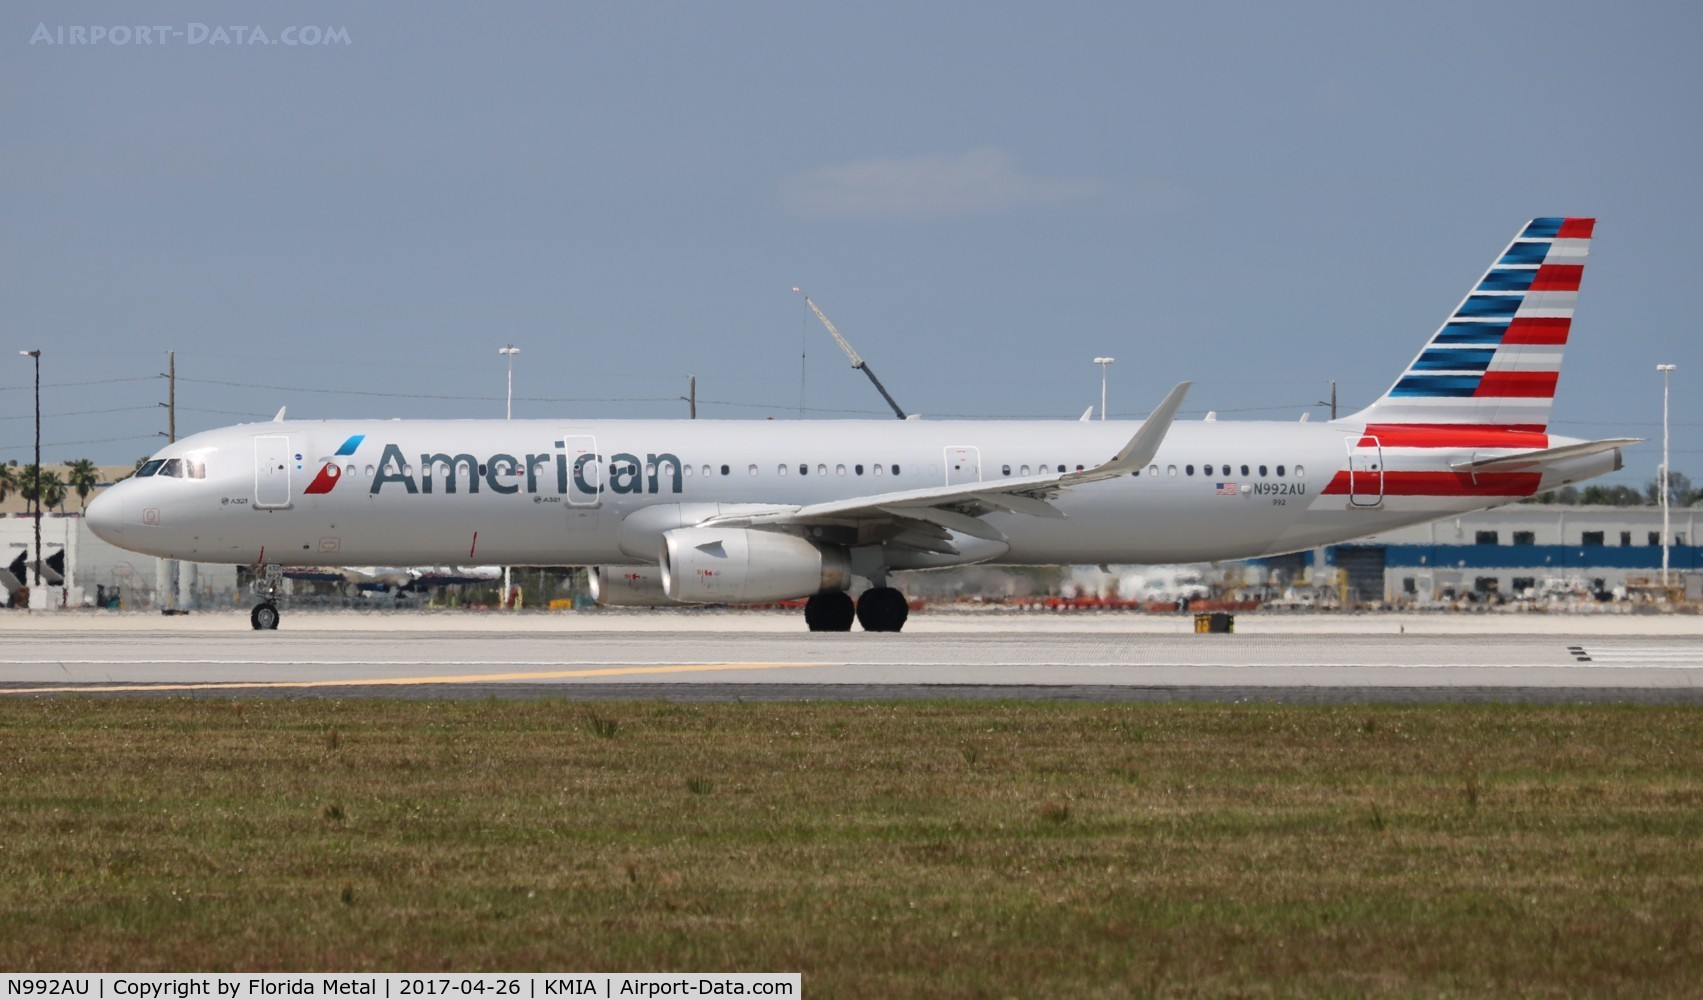 N992AU, 2016 Airbus A321-231 C/N 7157, American